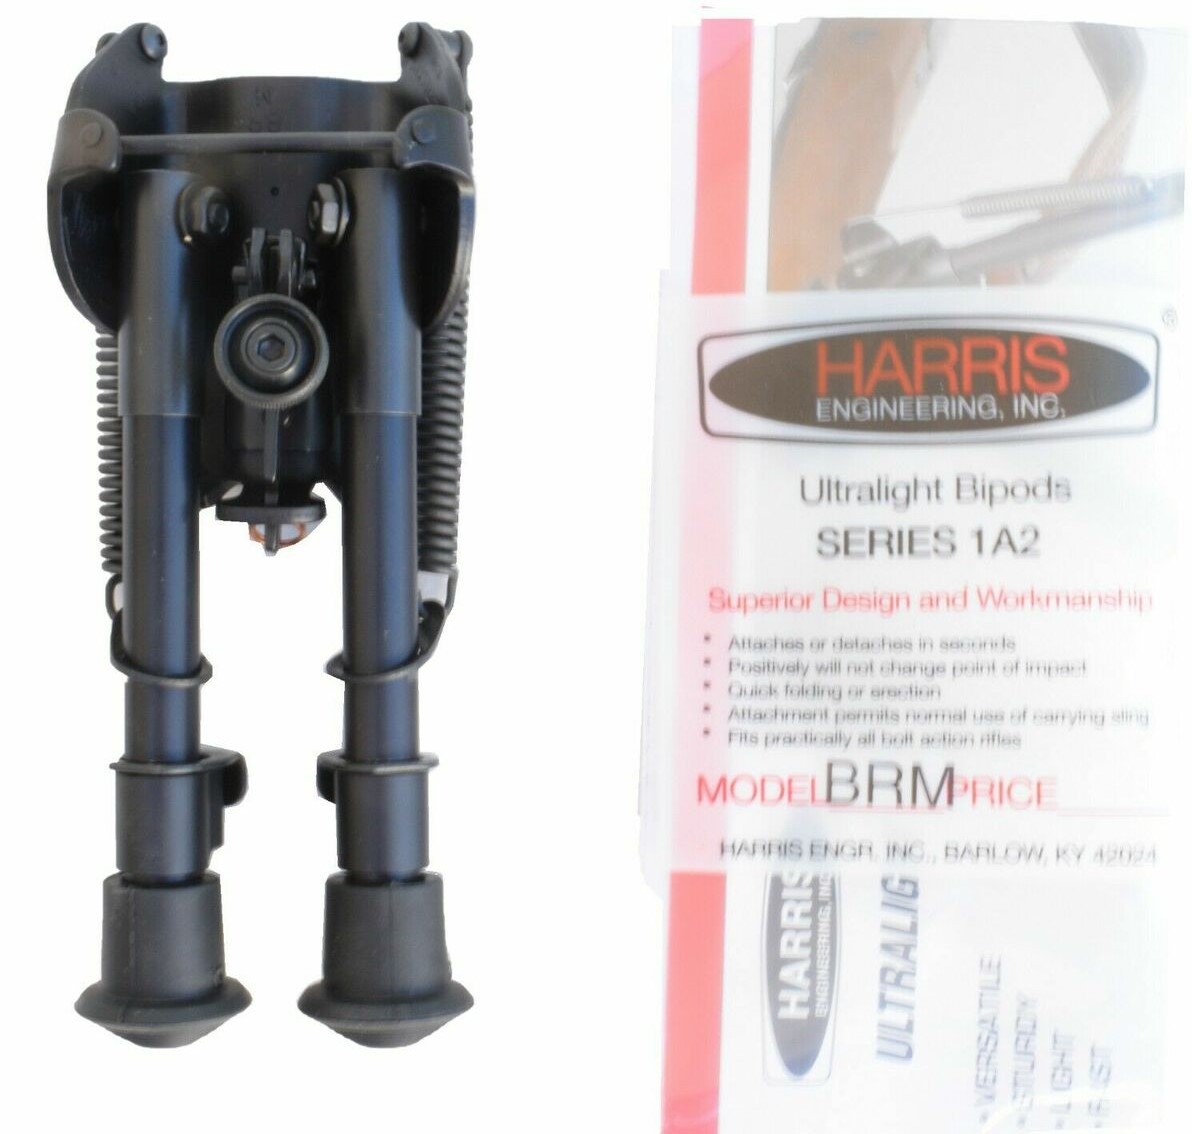 Harris series 1a2 BRM